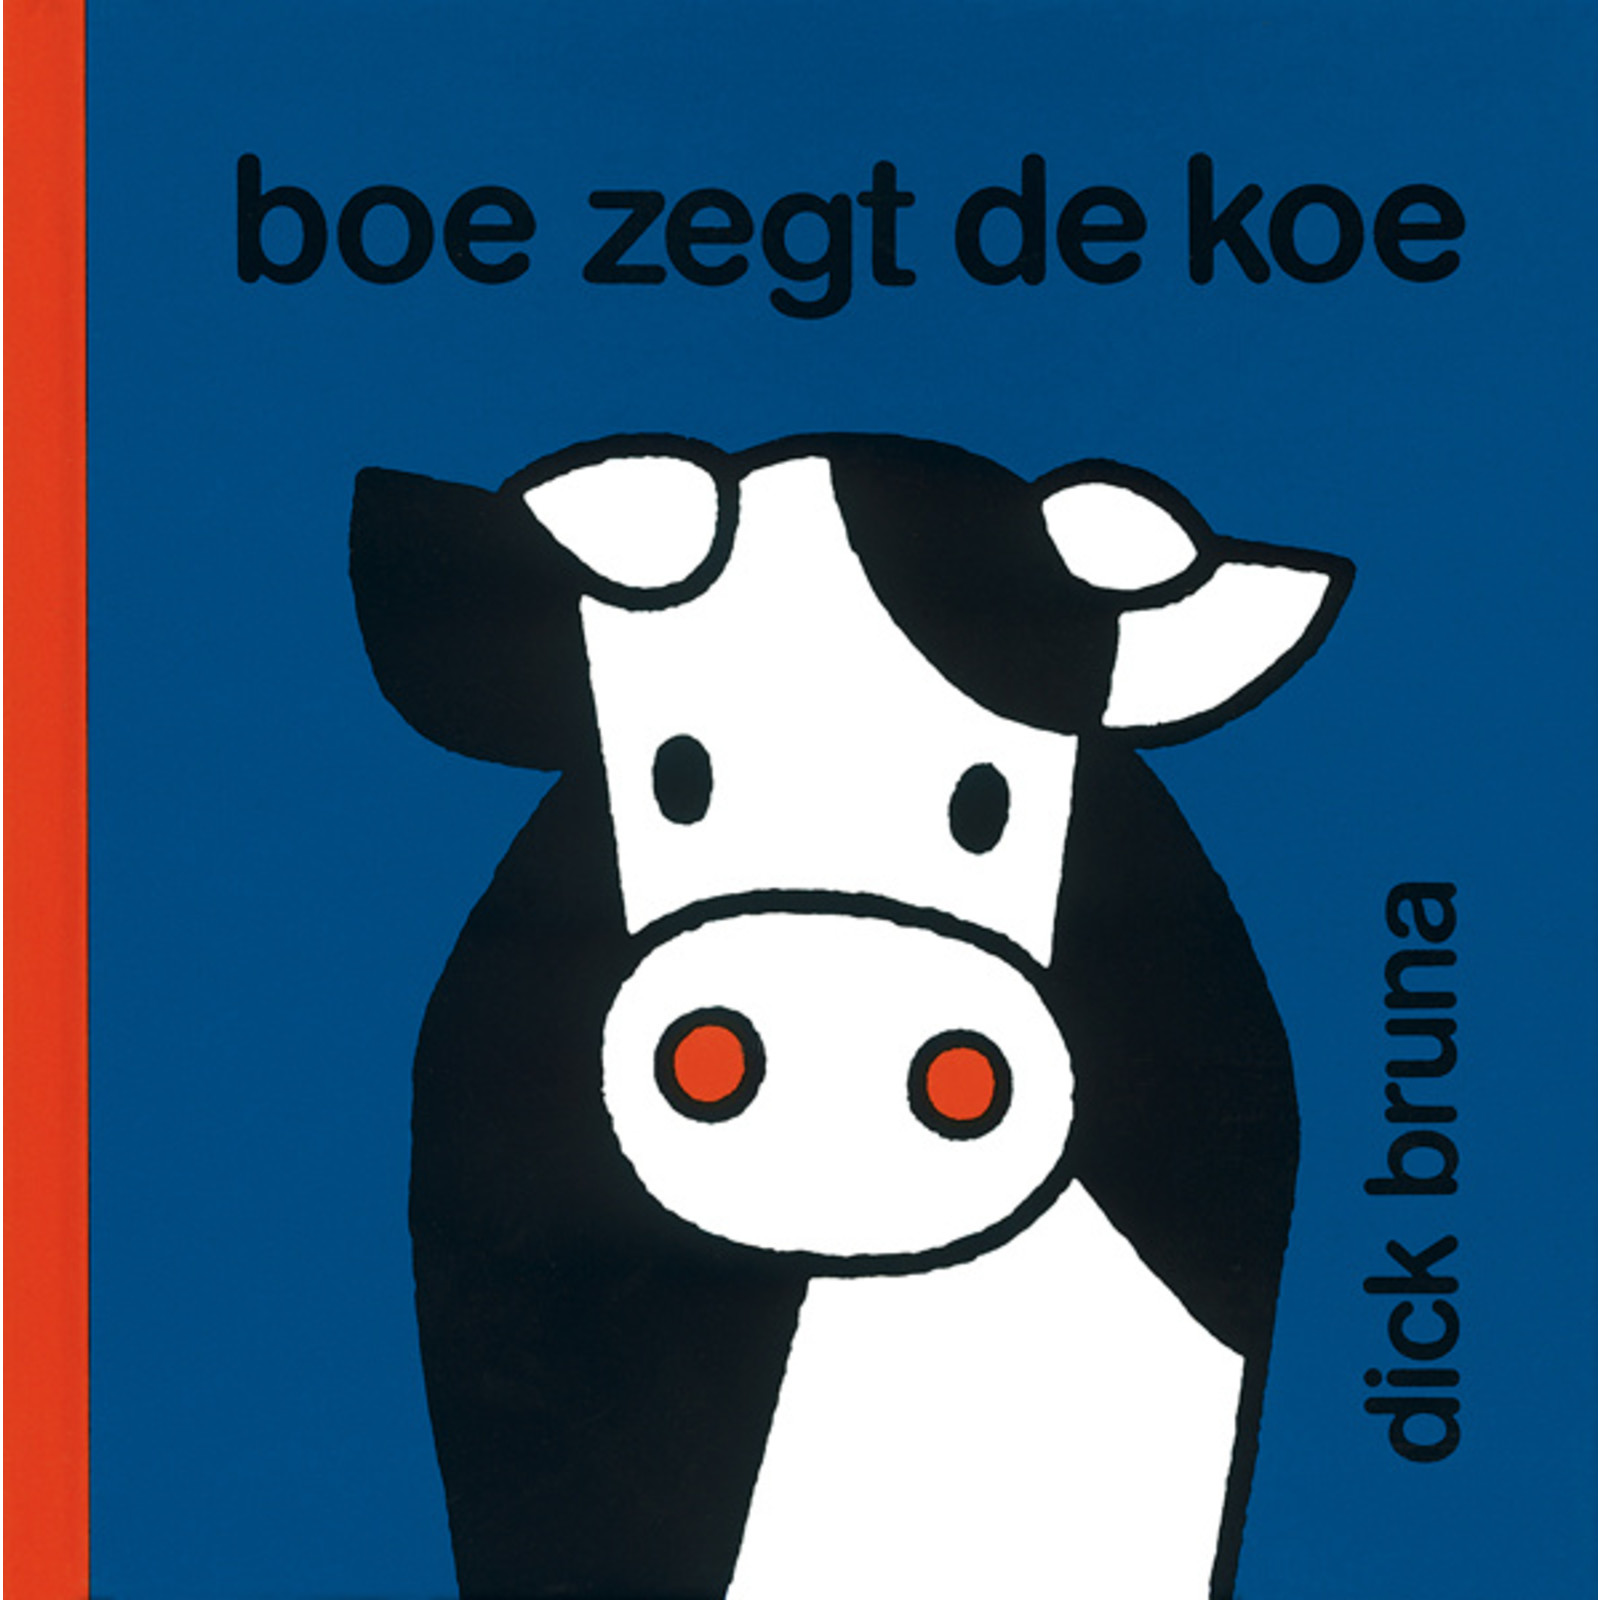 boe zegt de koe (the cow says moo)